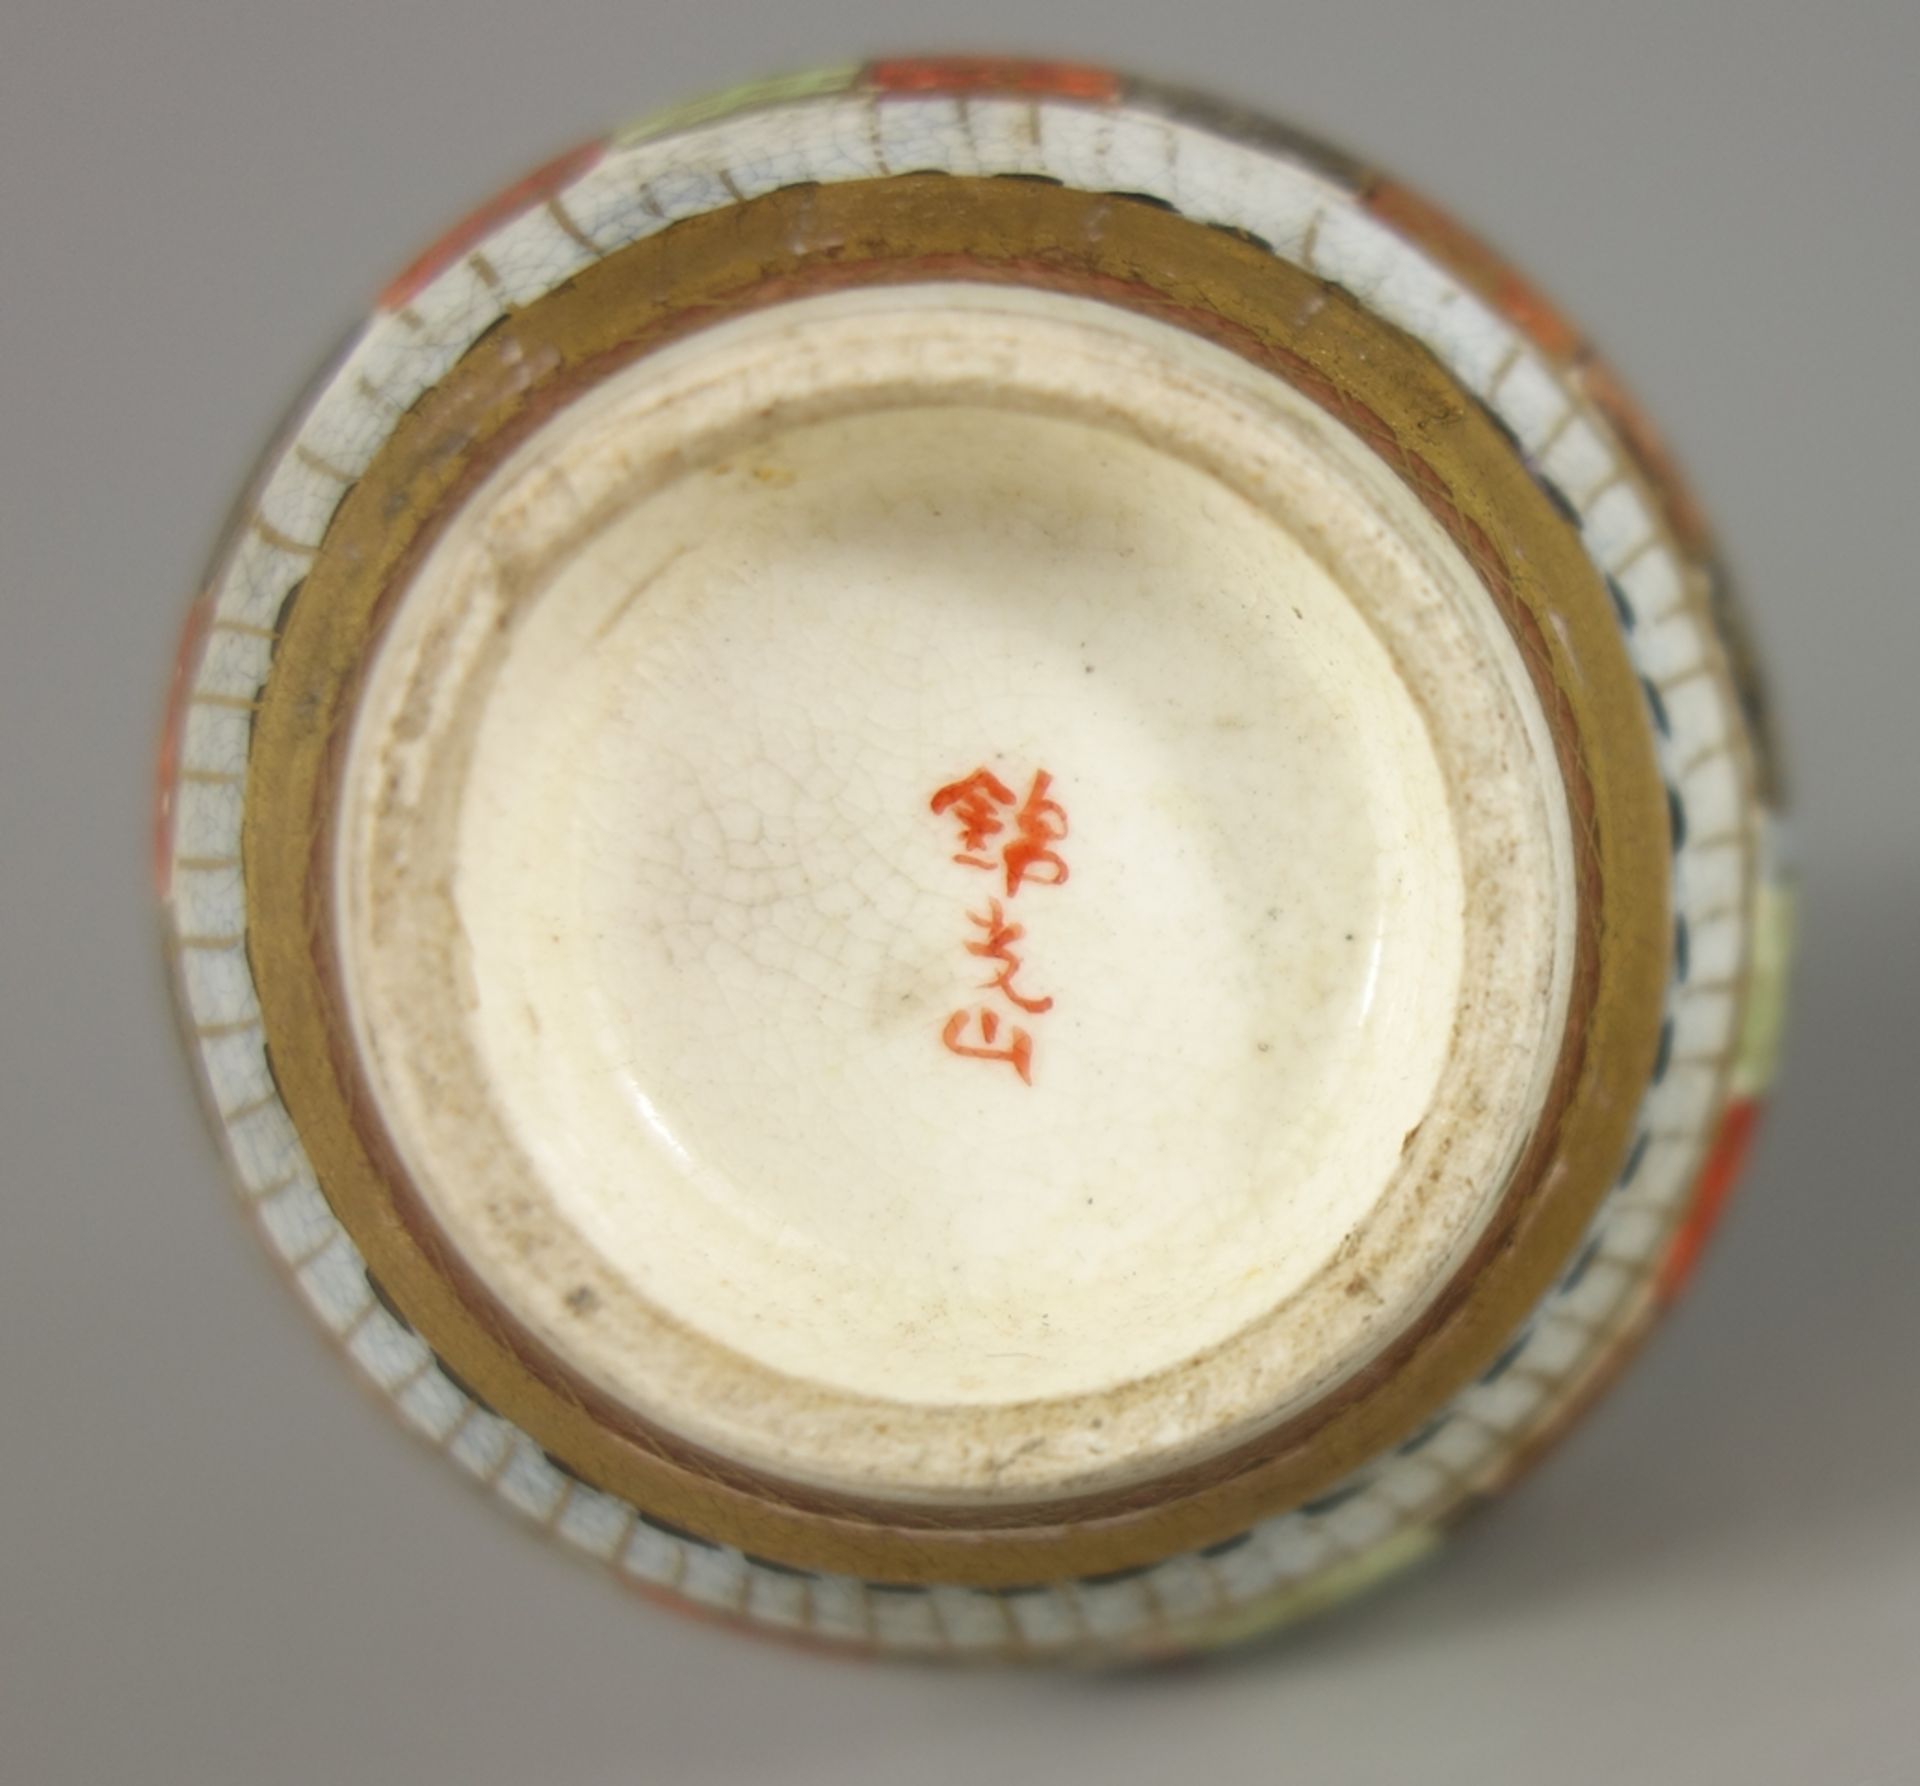 signierte Satsuma Vase "1000 Gesichter", Japan, Meji- Periode, H.7,8cm, Vergoldung min.berieben - Bild 2 aus 2